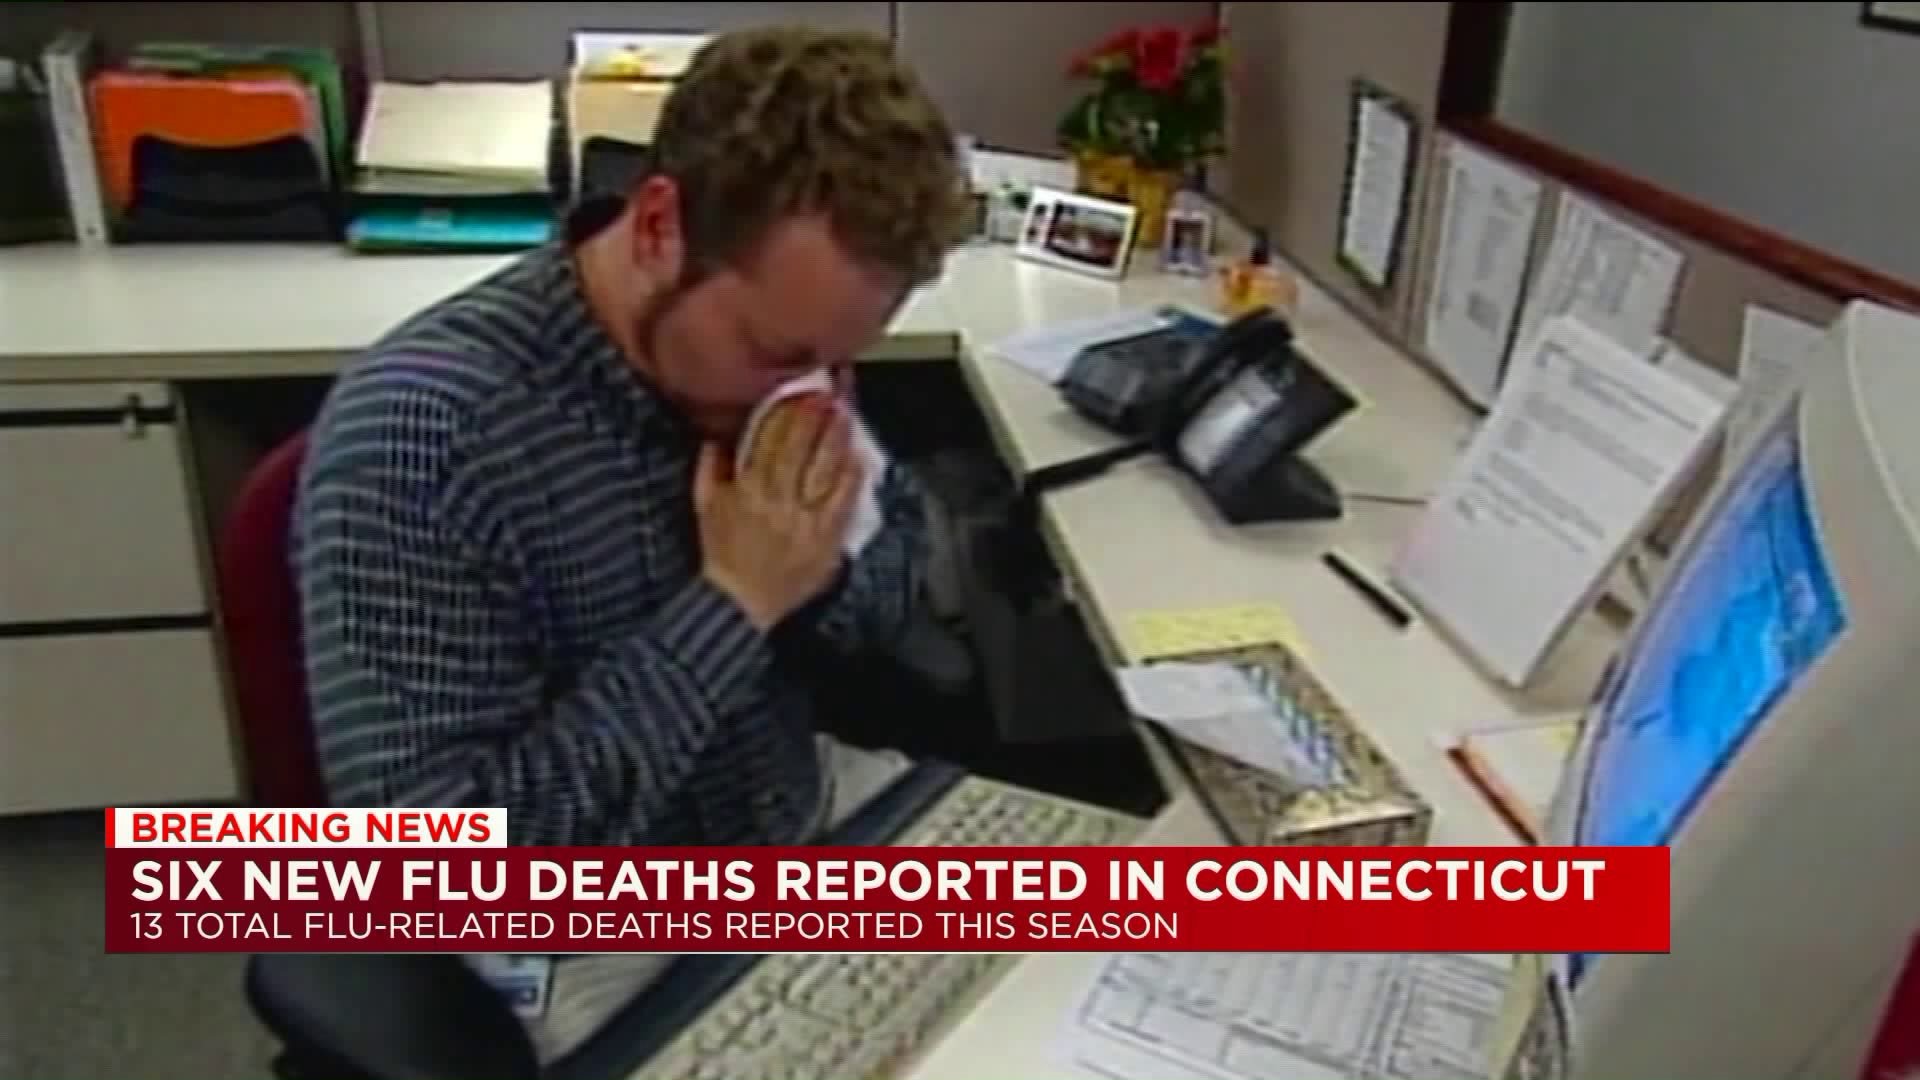 DPH: 6 people died from flu, bringing season total to 13